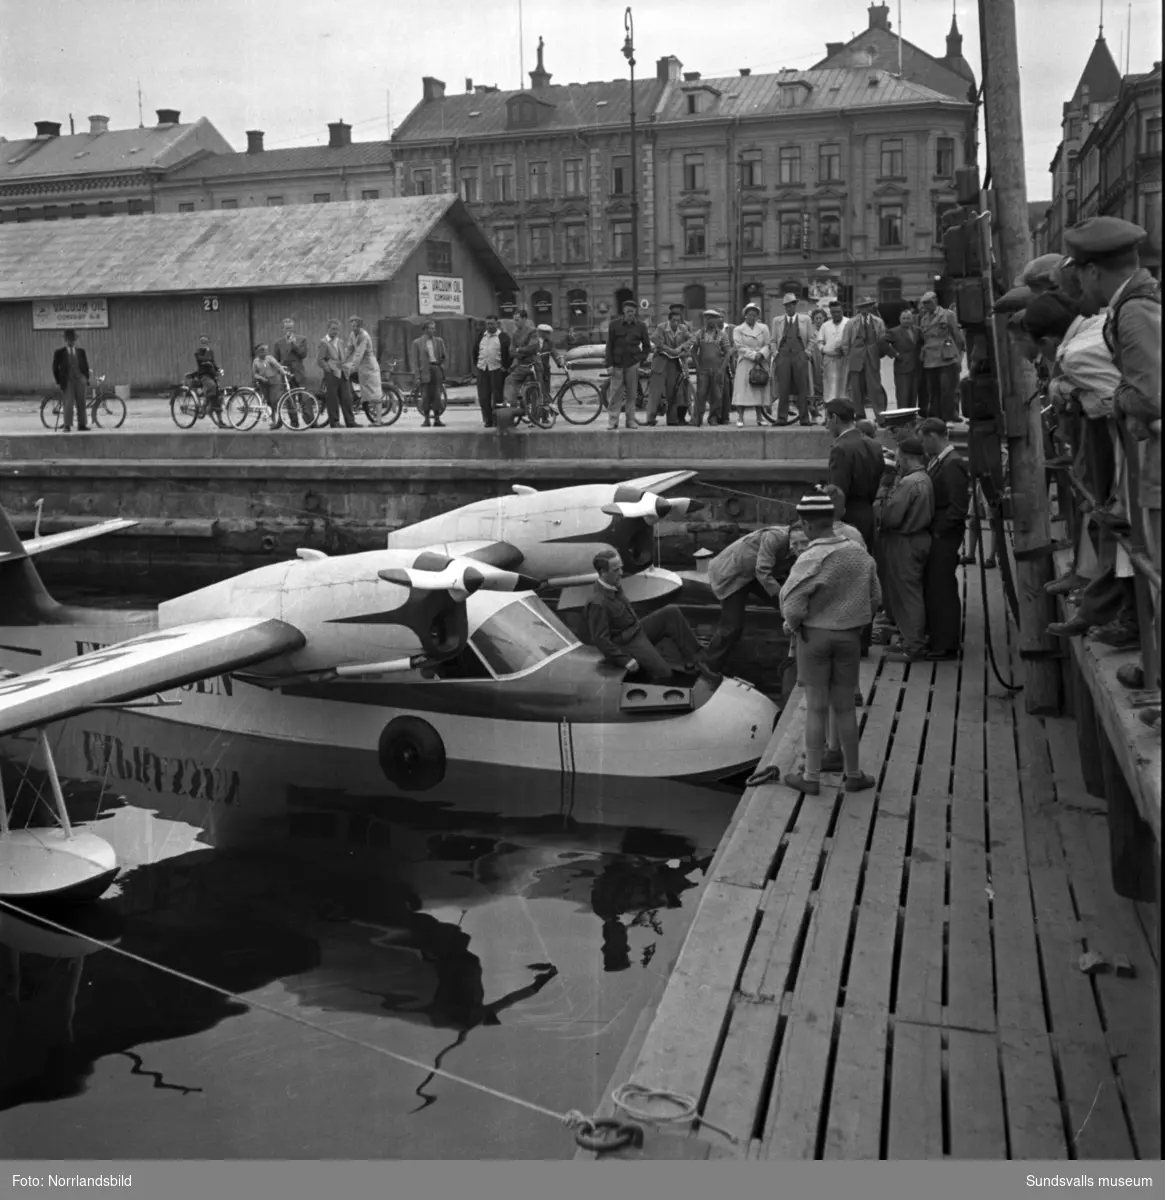 Många intresserade åskådare då Expressens tidningsplan på pontoner ligger förtöjd i hamnbassängen vid Tullgatan. Även bilder på planet ute vid Midlanda.